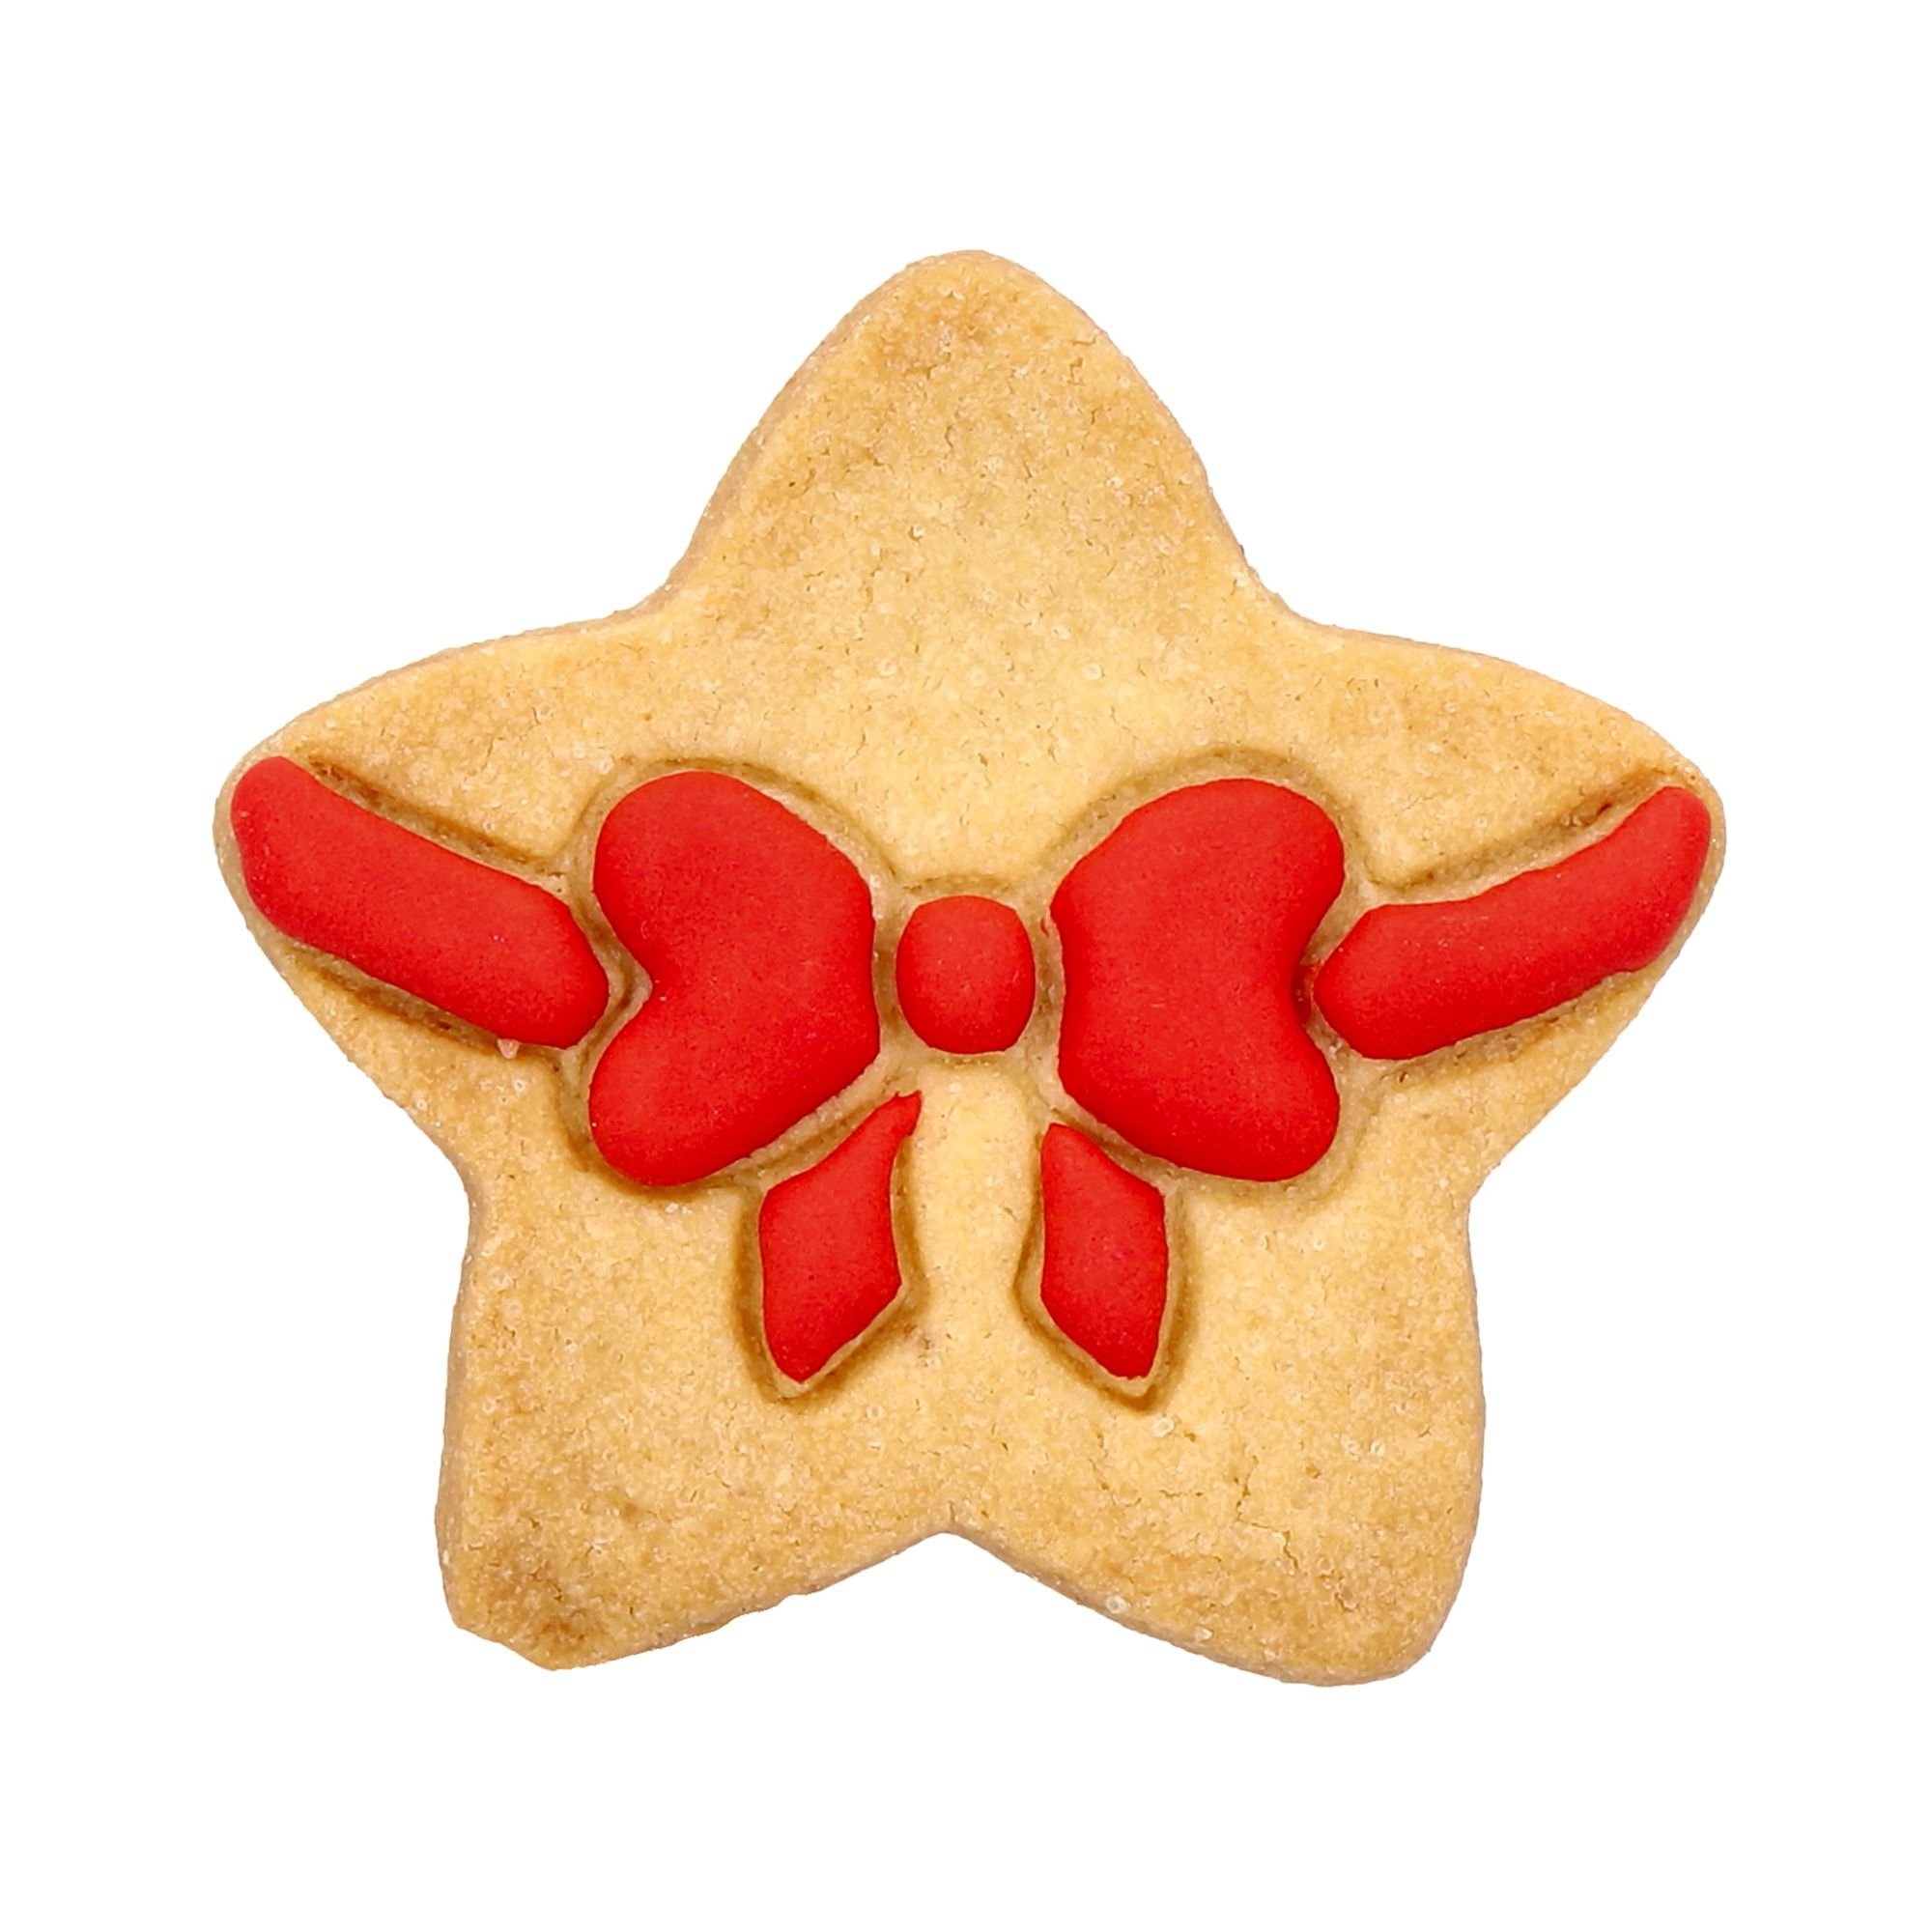 Birkmann - Cookie cutter - Star with bow - 6,5 cm